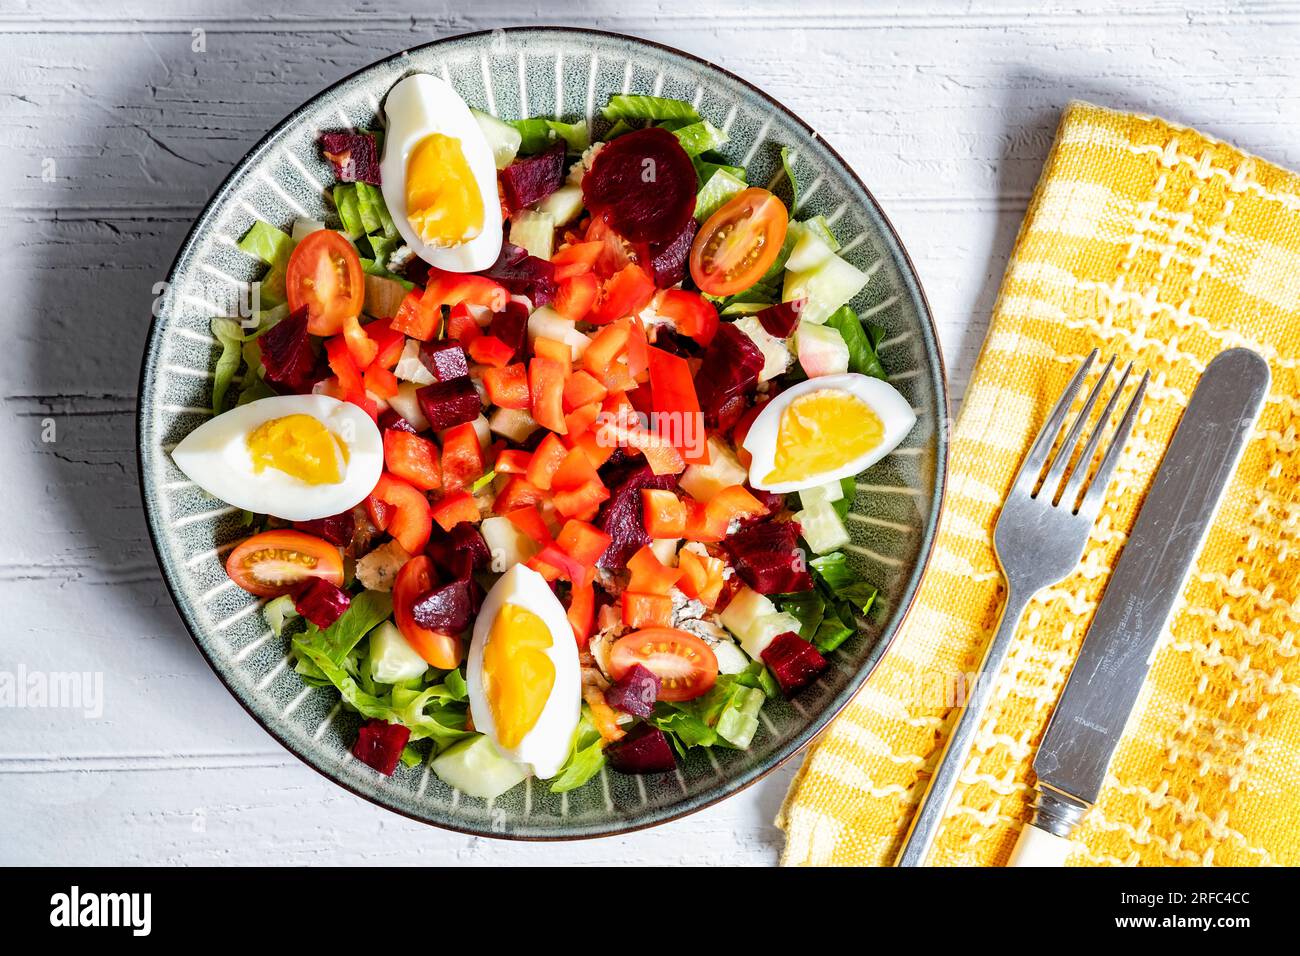 Ein gesunder mediterraner Diät-Salat, serviert in einer Schüssel mit bunten Salatzutaten wie Tomaten, Paprika, rote Rüben, Eier und Salat. Stockfoto